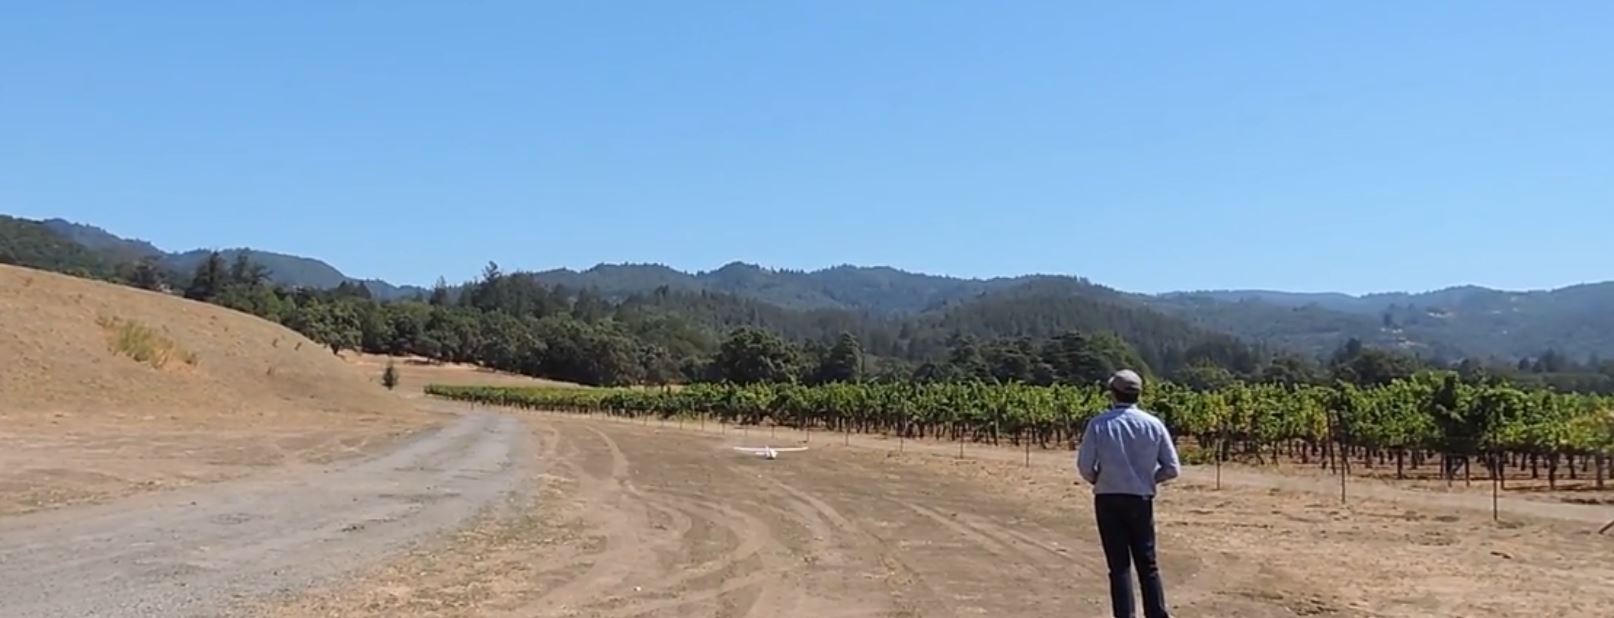 Le drone au secours des viticulteurs